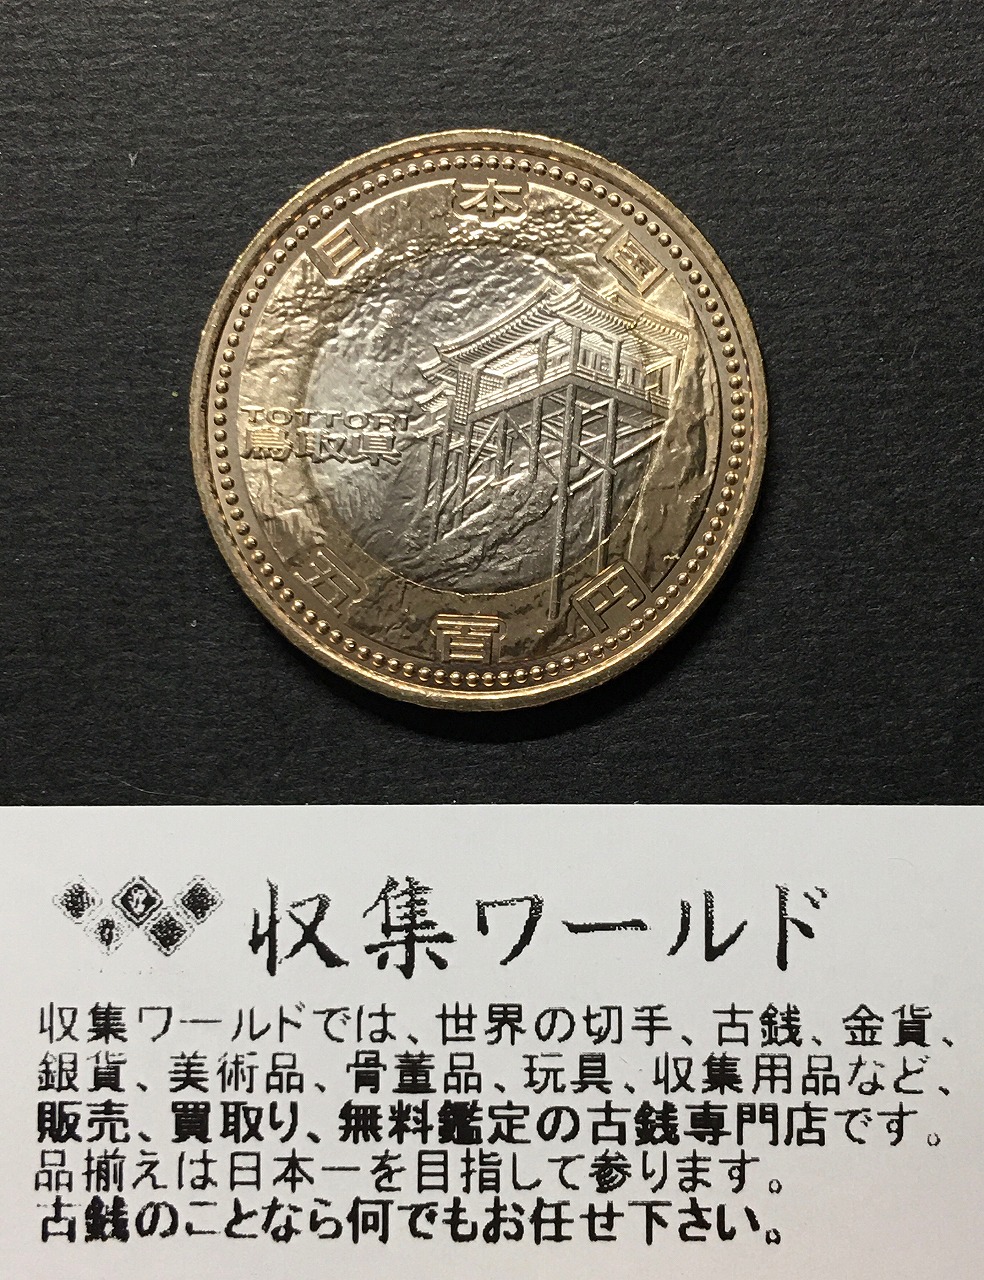 皇太子殿下御成婚記念 5000円銀貨と500円白銅貨 2枚セット 未使用 